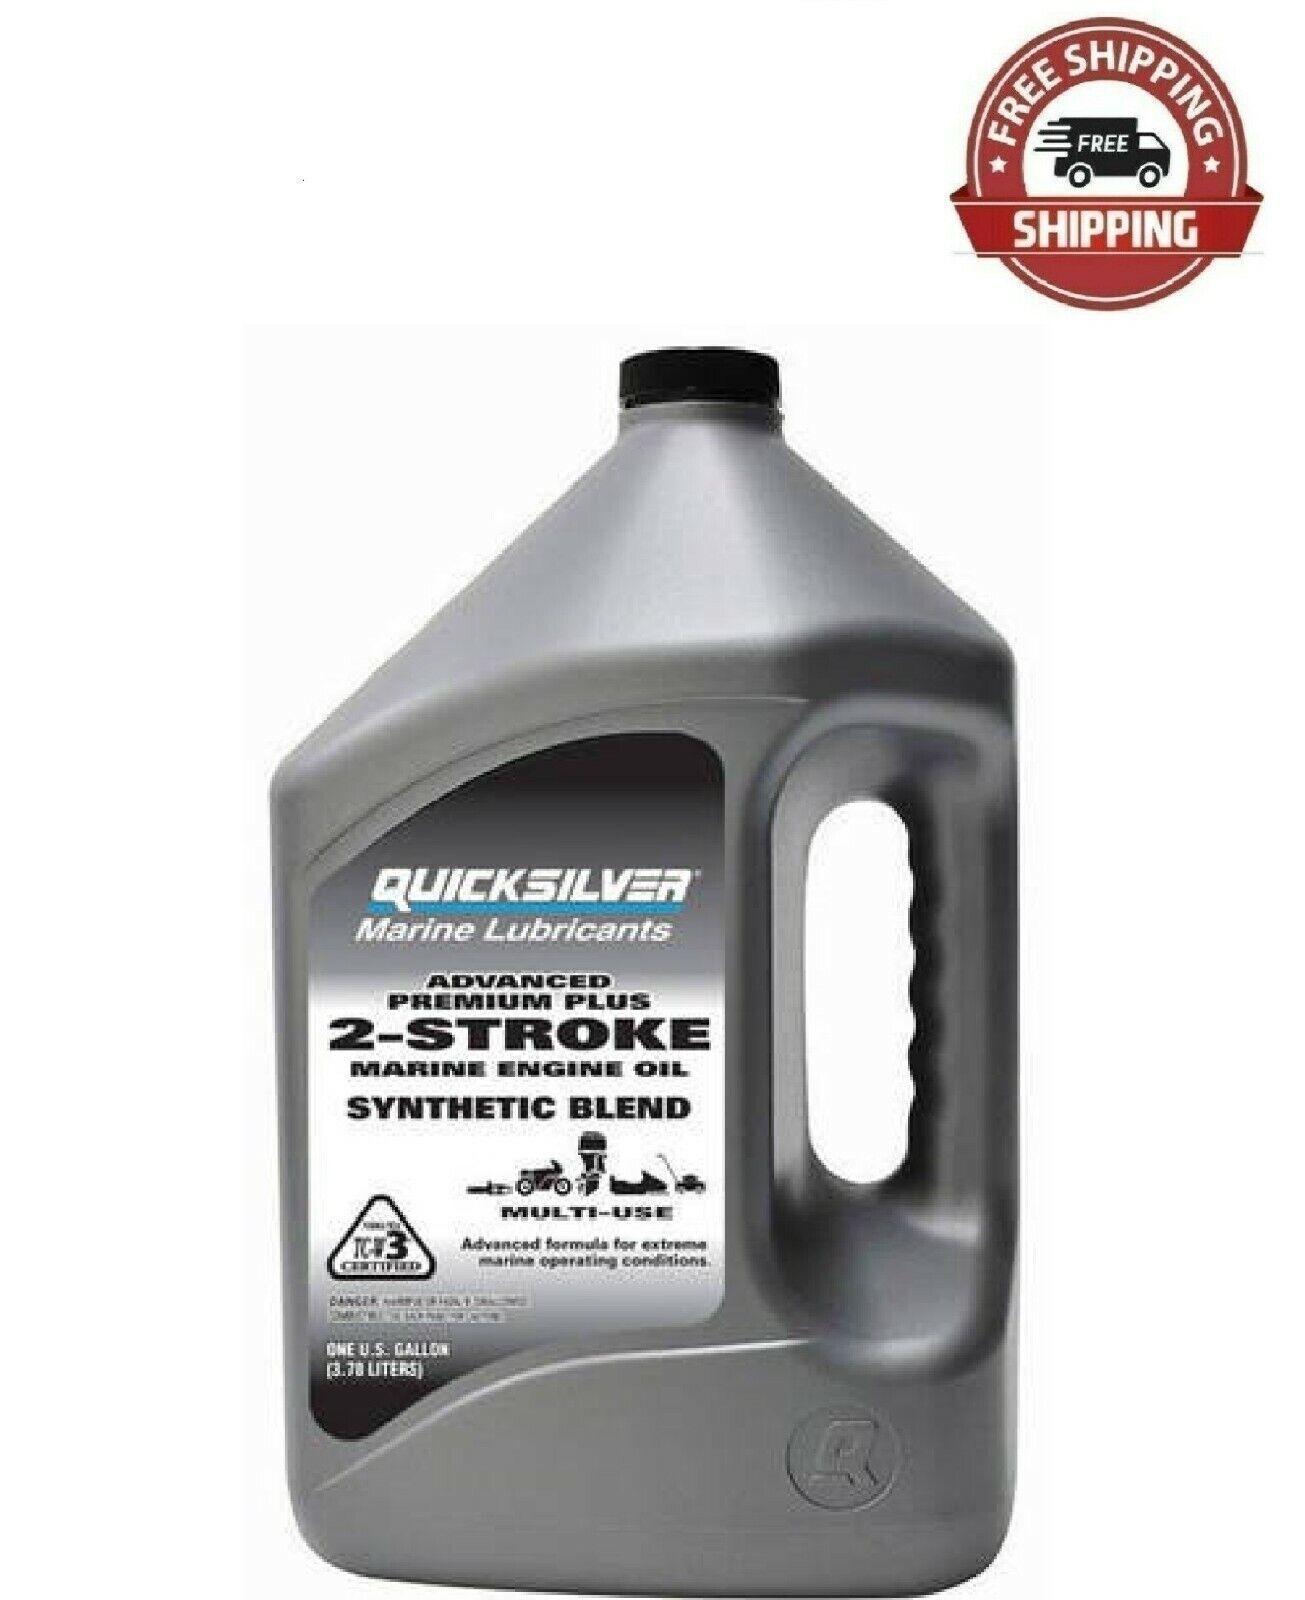 Quicksilver Premium plus 2-Stroke Synthetic Blend Marine Oil - 1 Gallon, New;